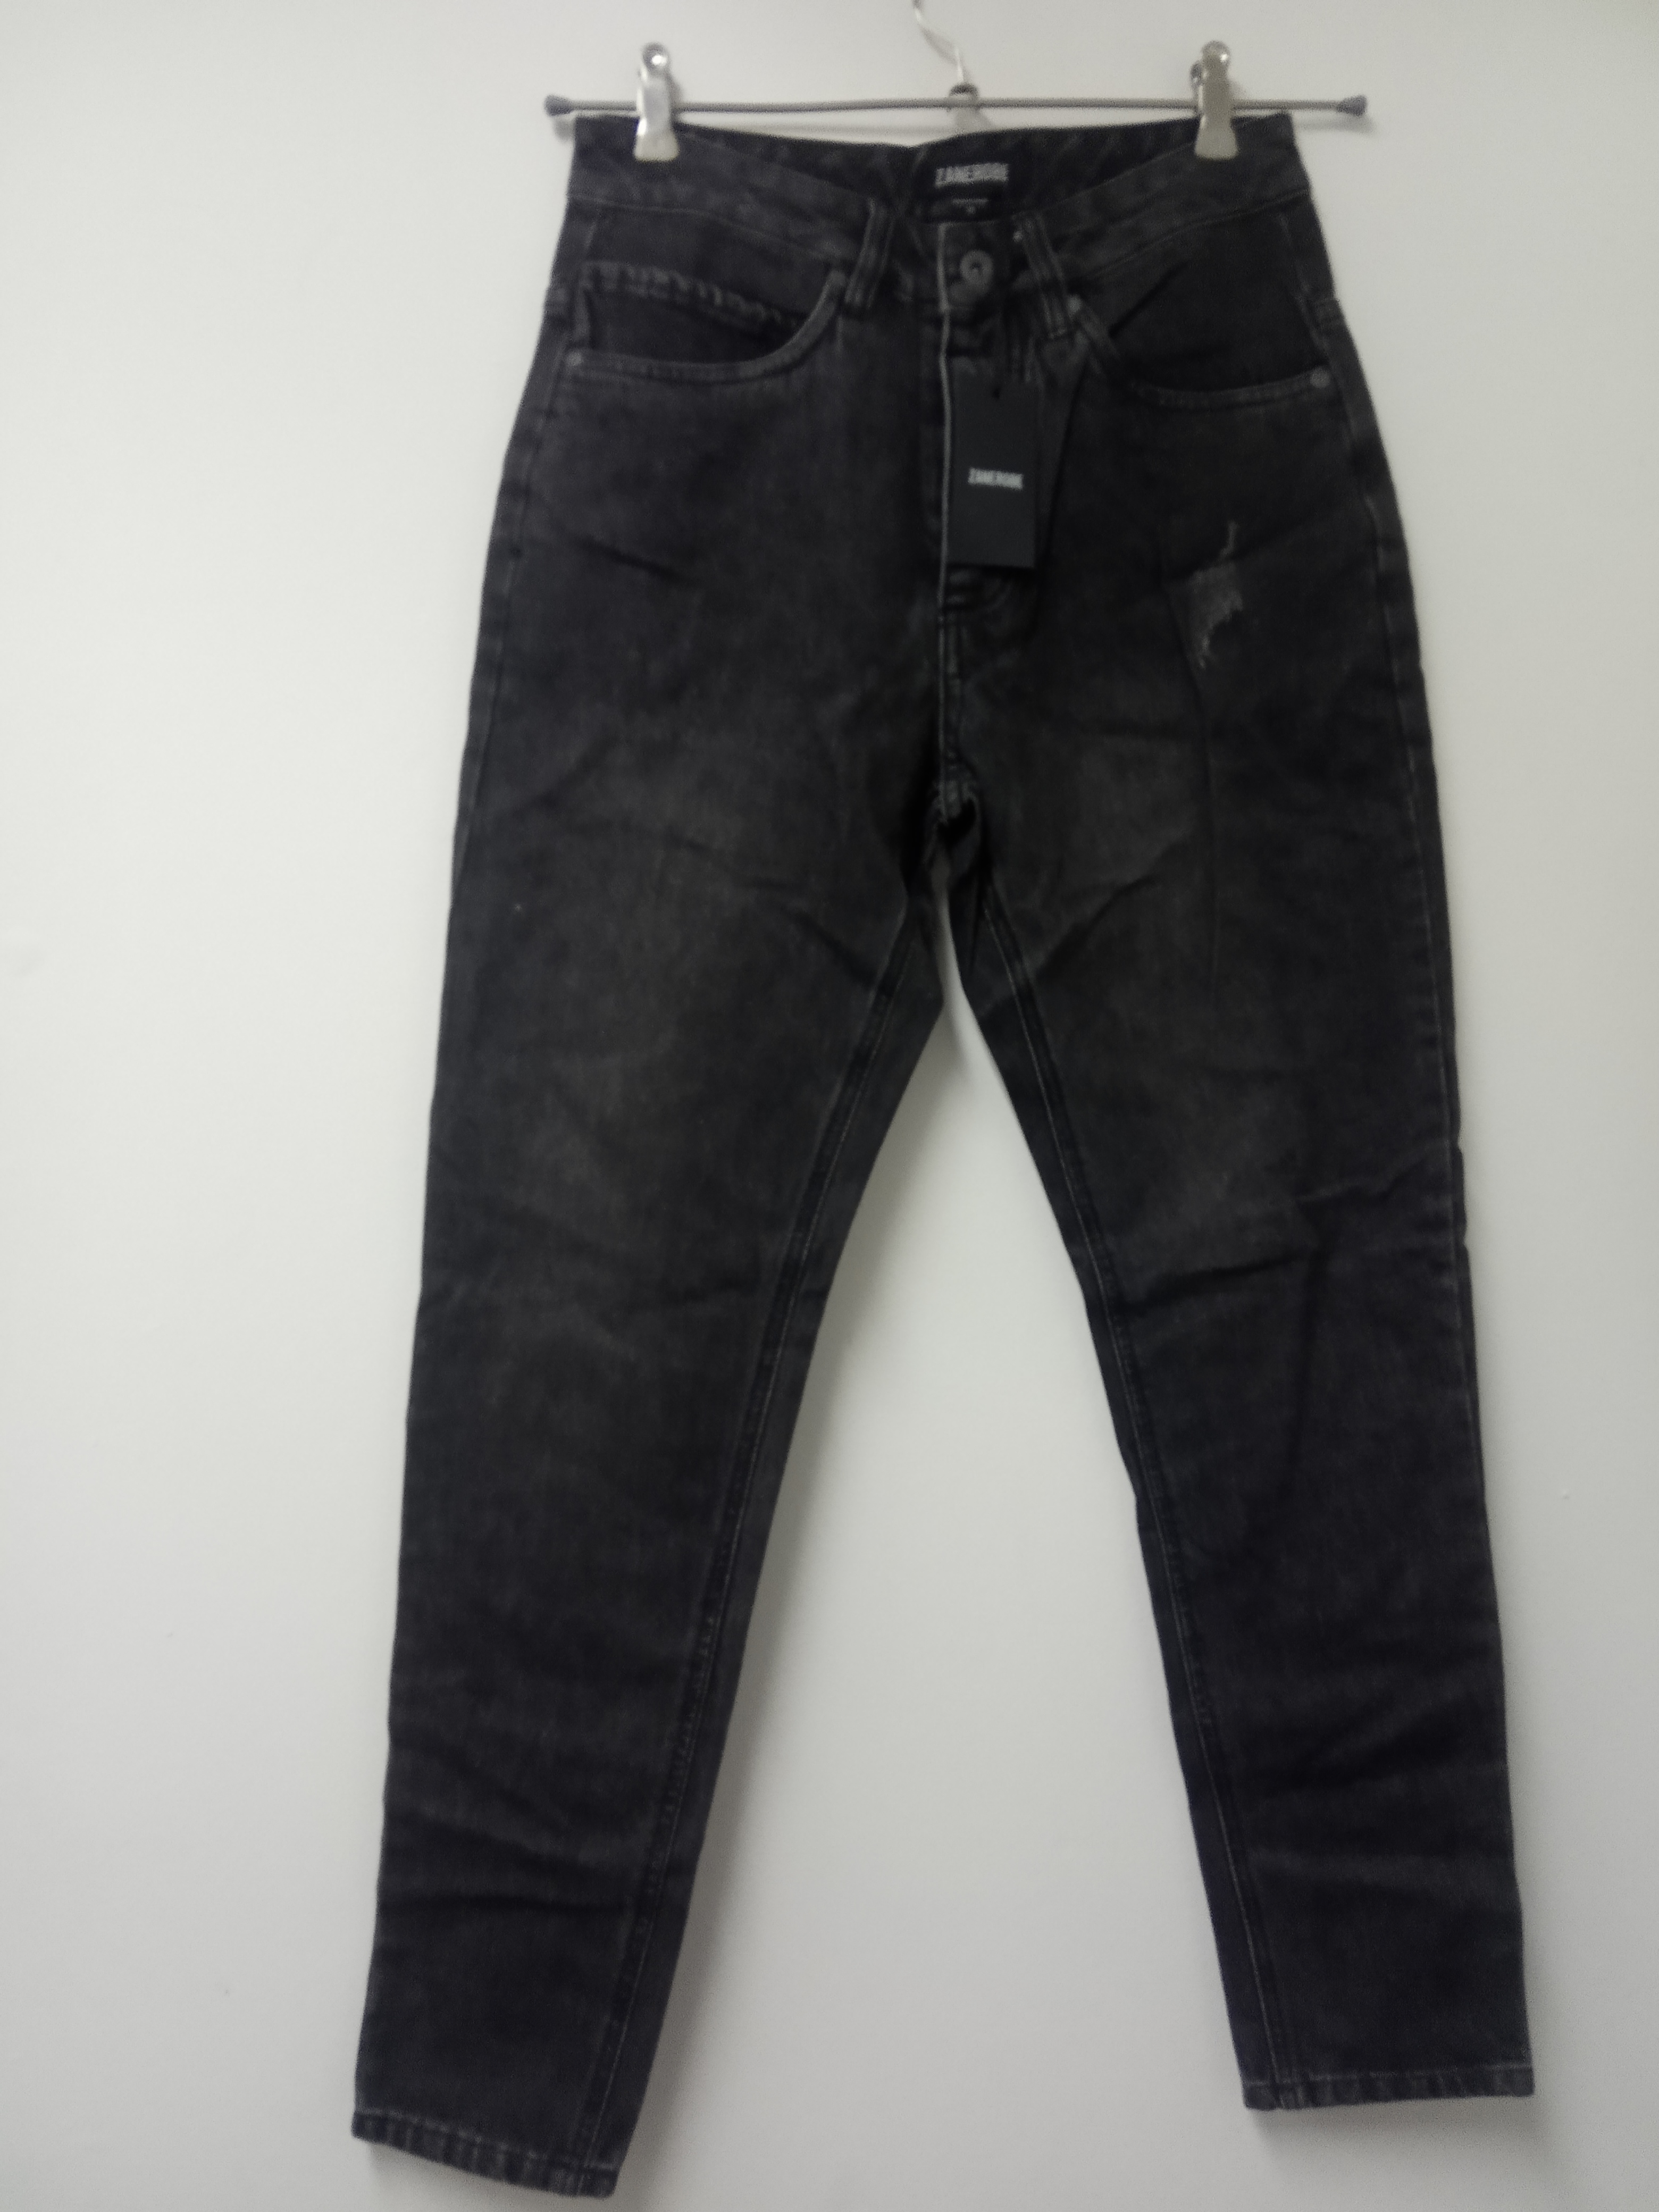 תמונה 1 ,ג'ינס zanrobe מידה 29 למכירה בתל אביב  ביגוד ואביזרים  ג'ינסים ומכנסיים